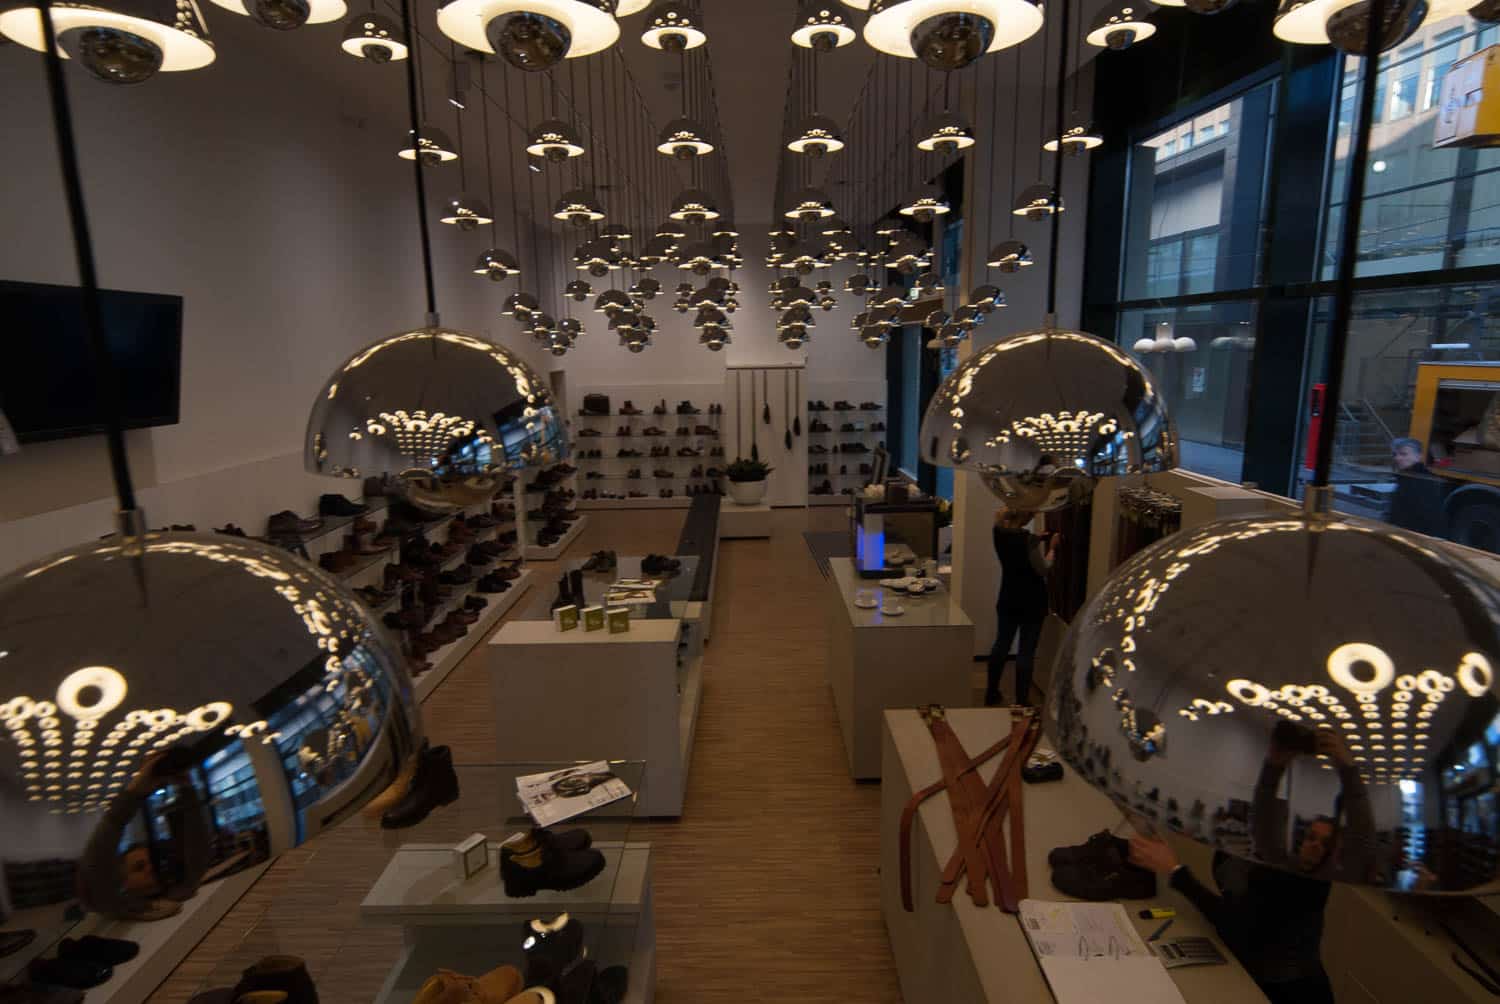 HOOGSPOOR schoenenwinkel Floris van Bommel licht project